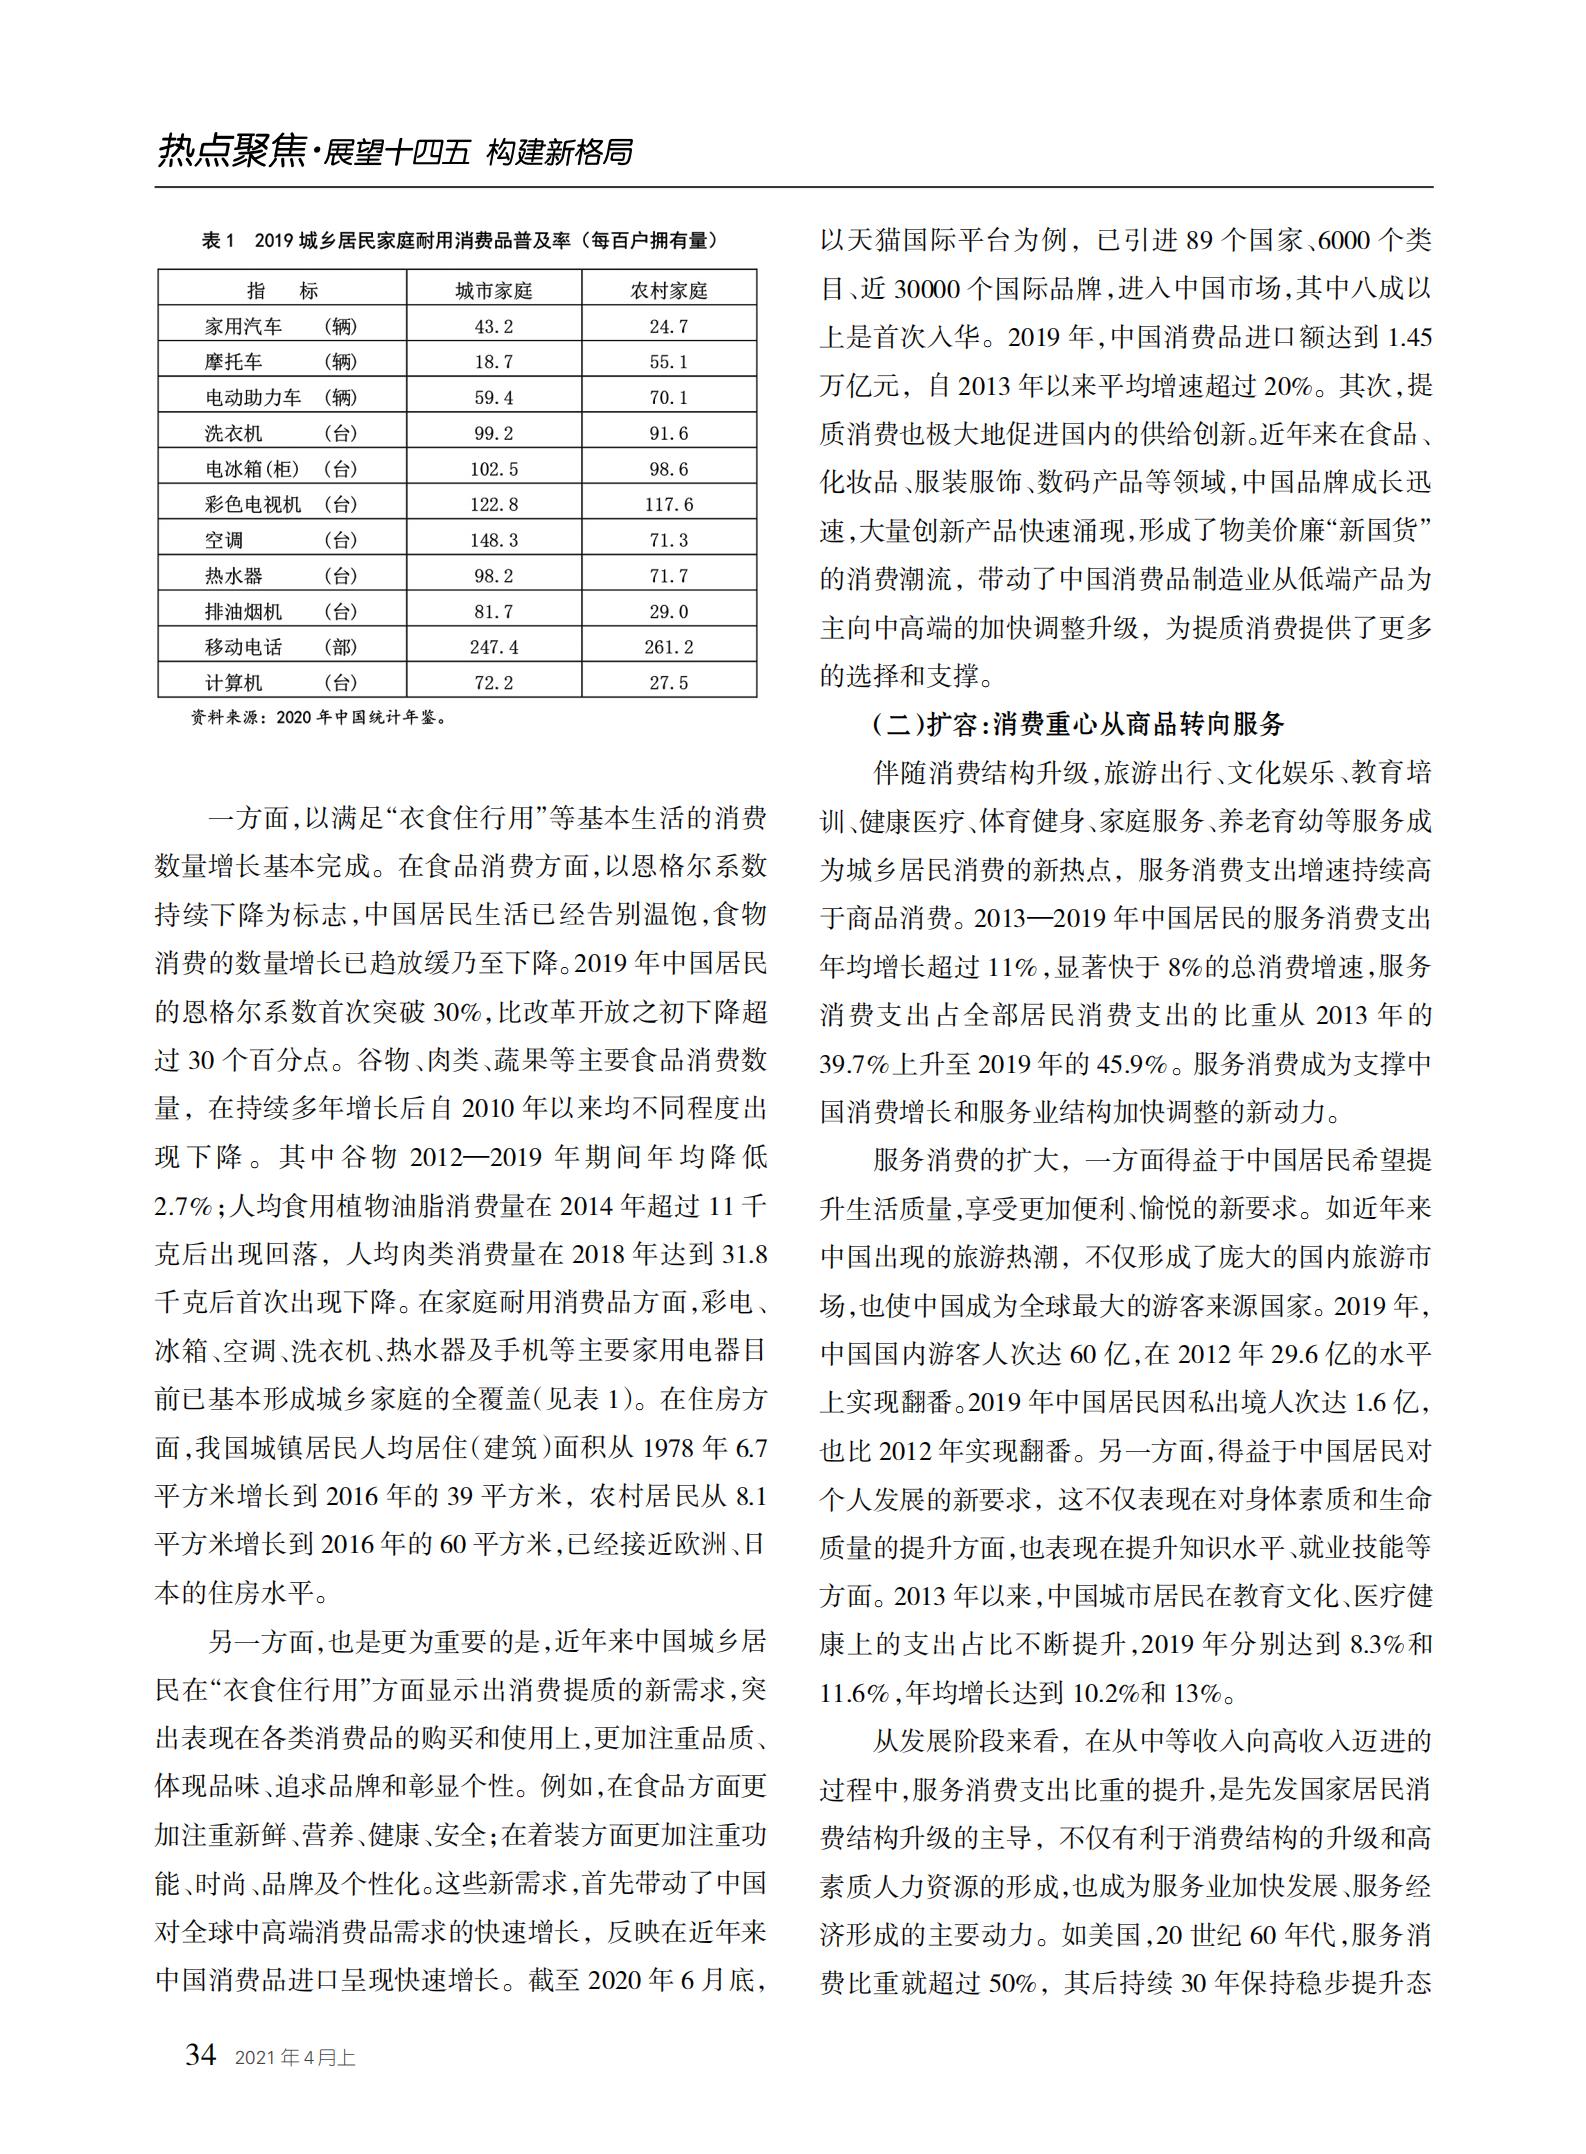 中国经贸导刊2021-4上印刷_33.jpg